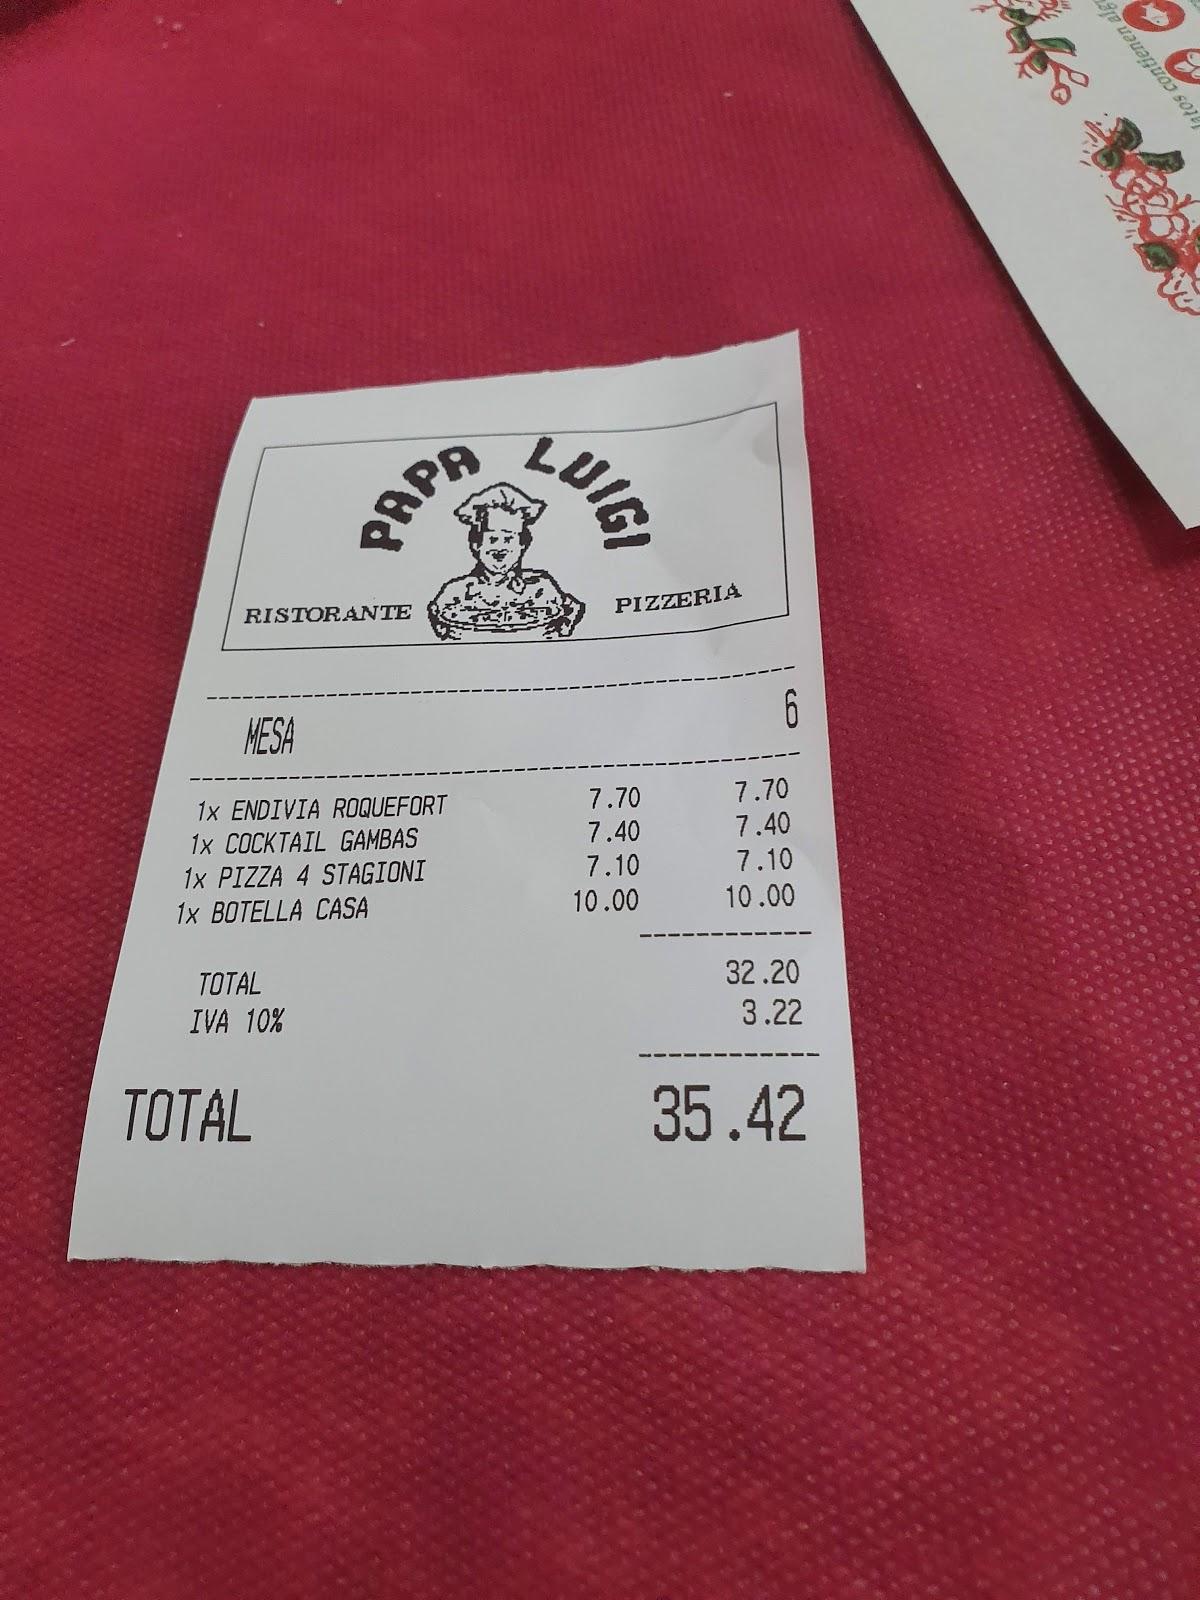 Iva no incluido en el precio. Sucia estratagema para cobrar de más. Los  productos de la carta de - Picture of Pizzeria Papa Luigi, Fuengirola -  Tripadvisor